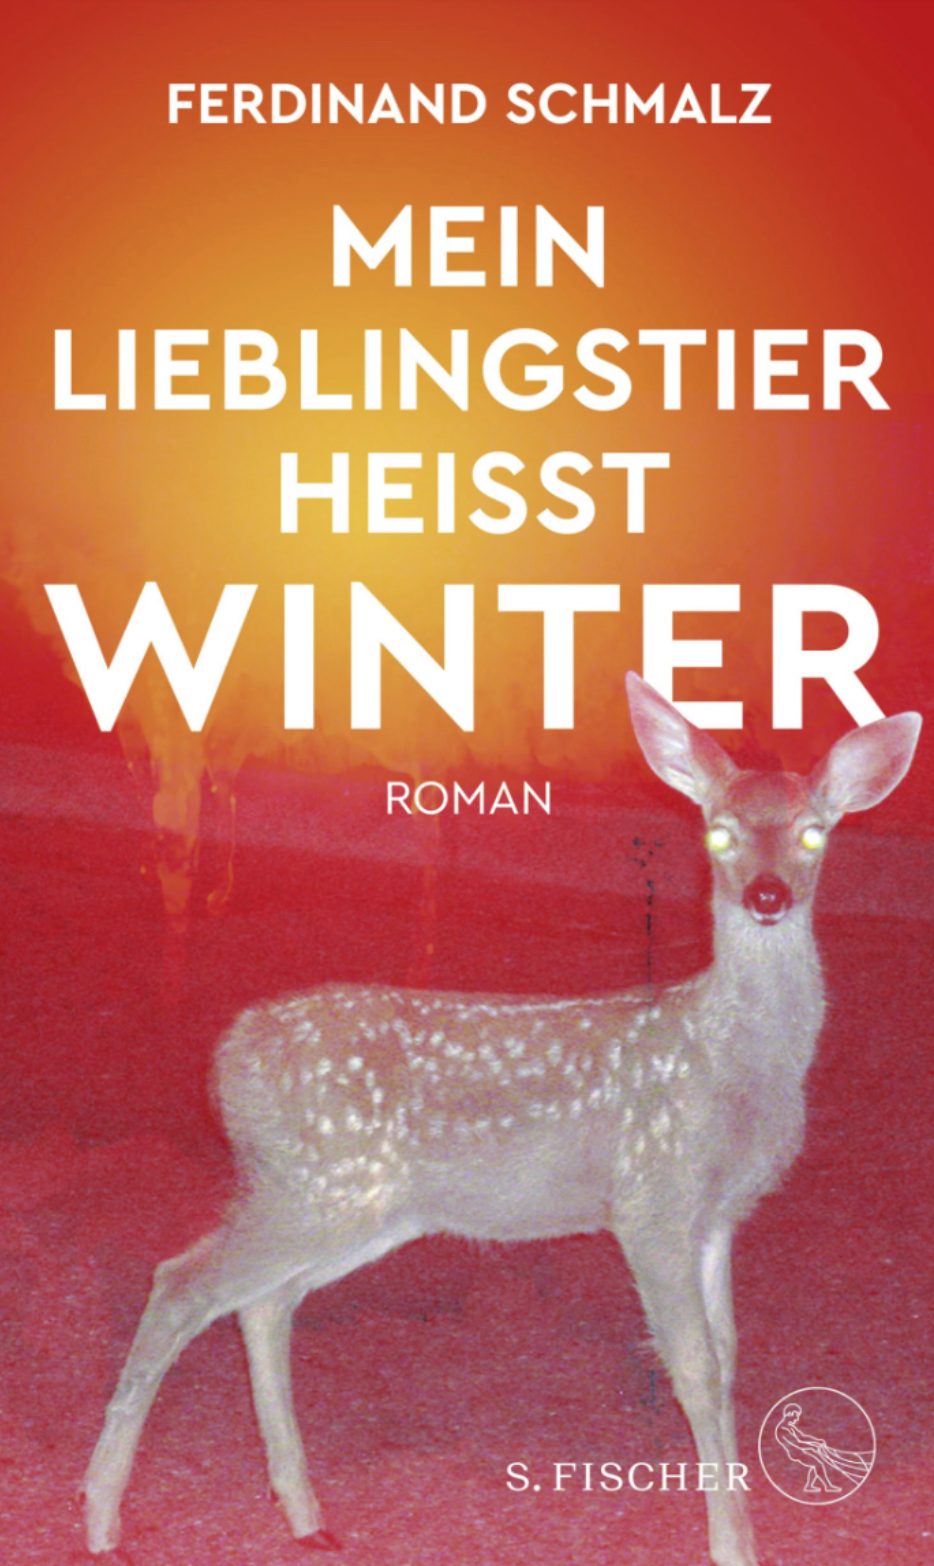 ferdinand schmalz book cover with deer